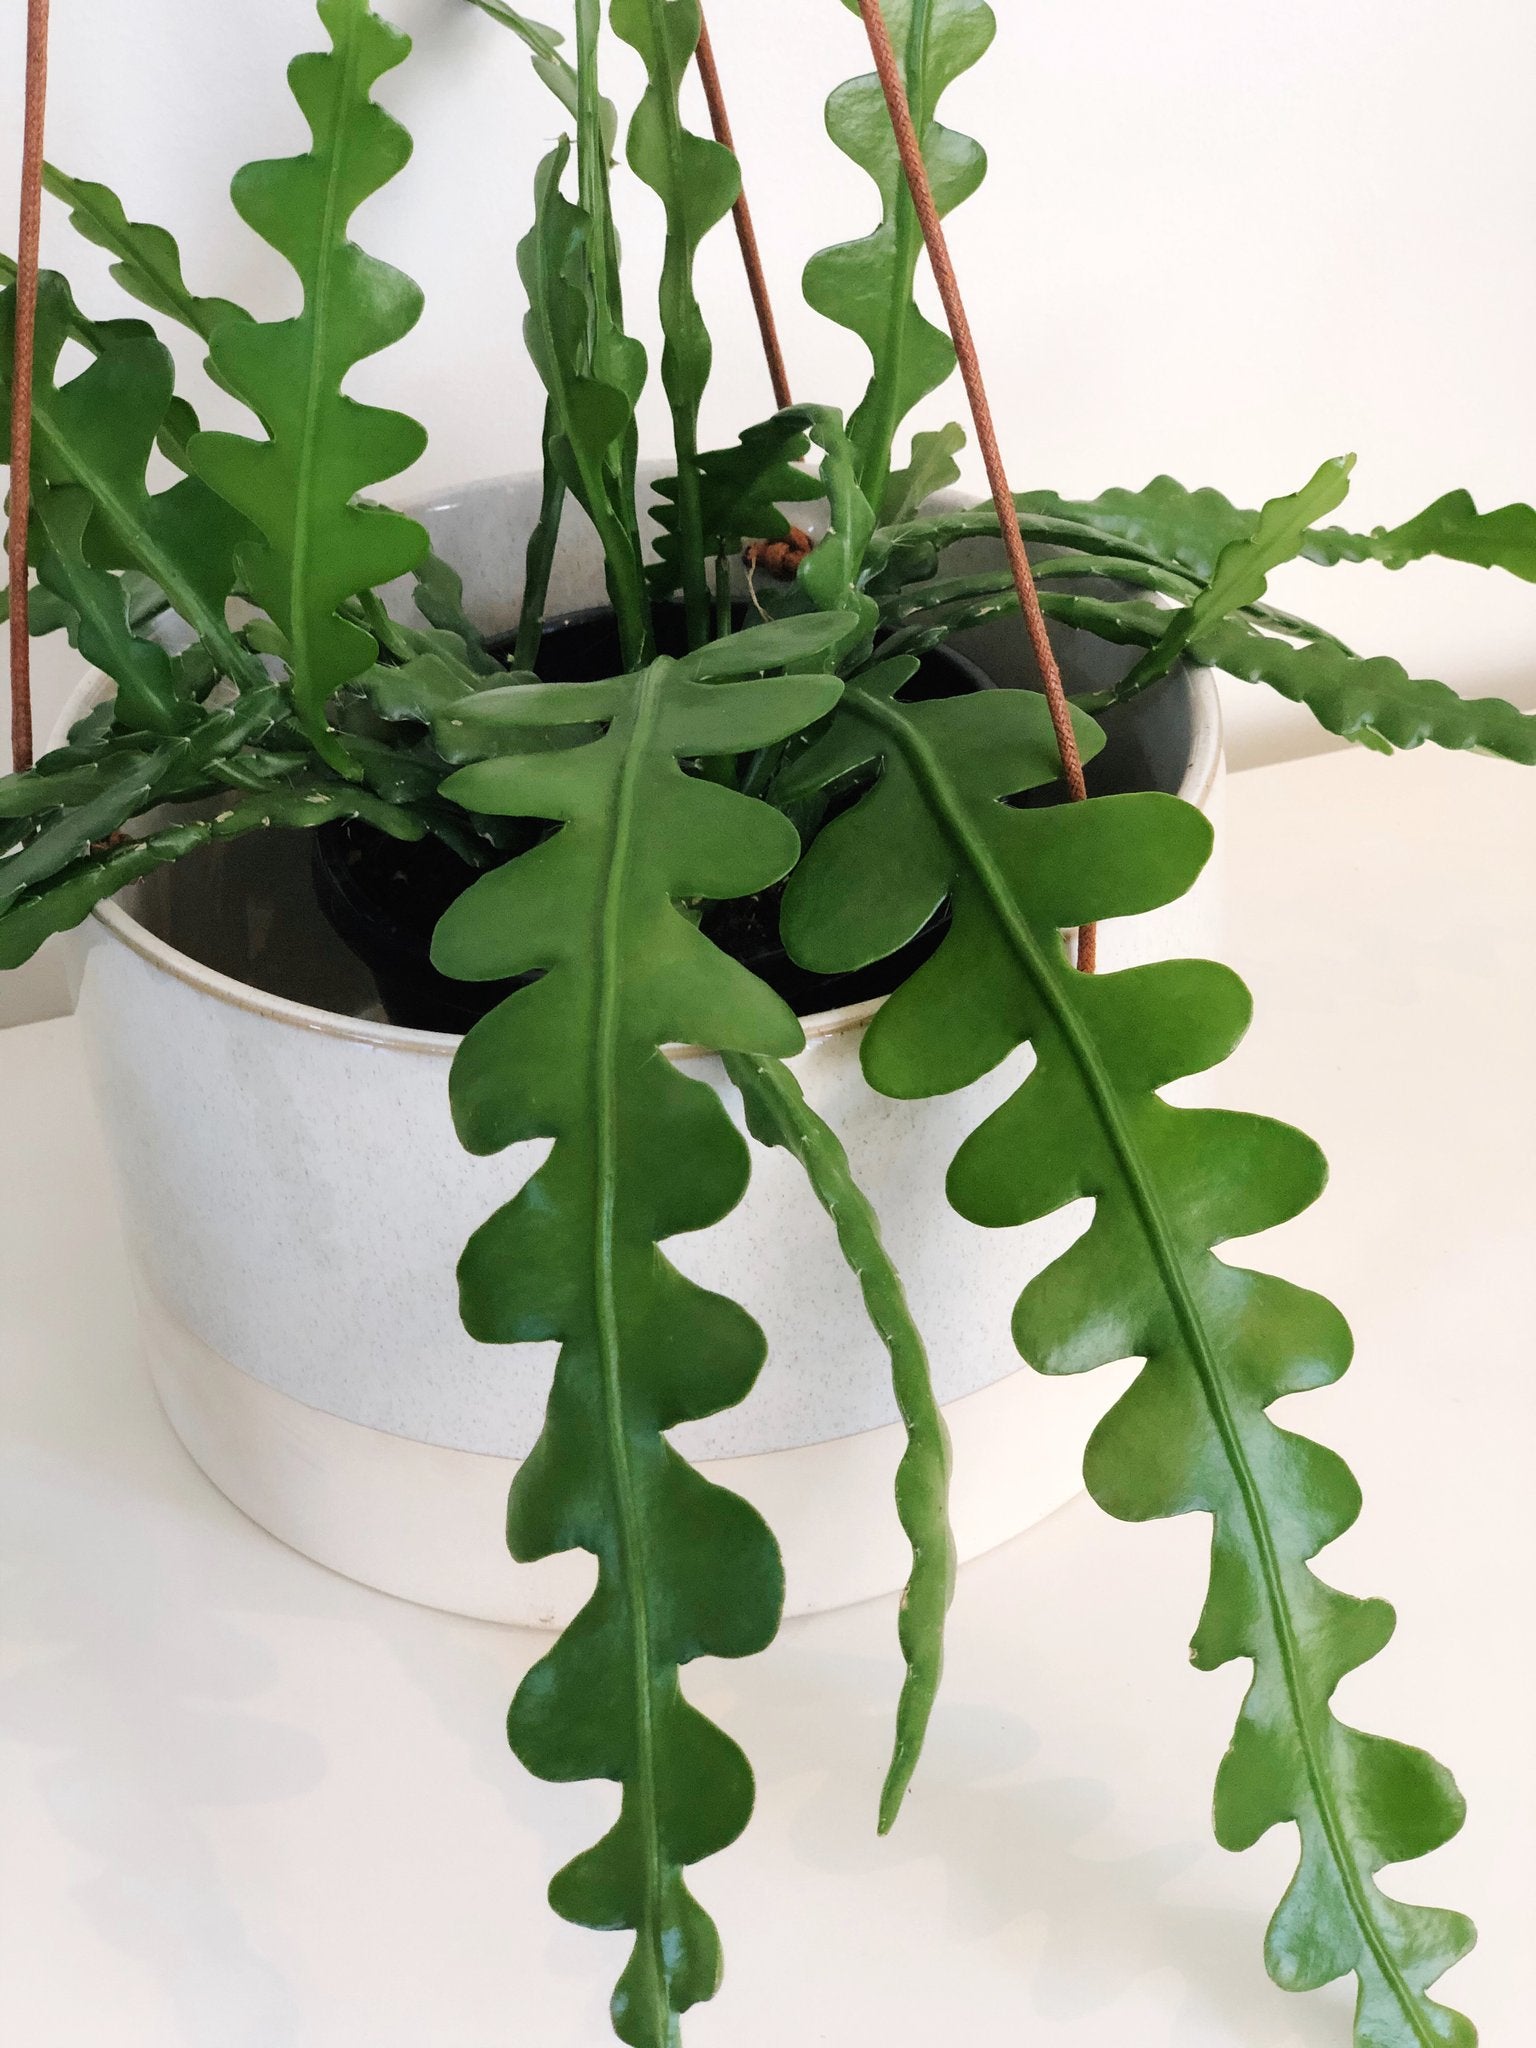 Fishbone cactus plant care